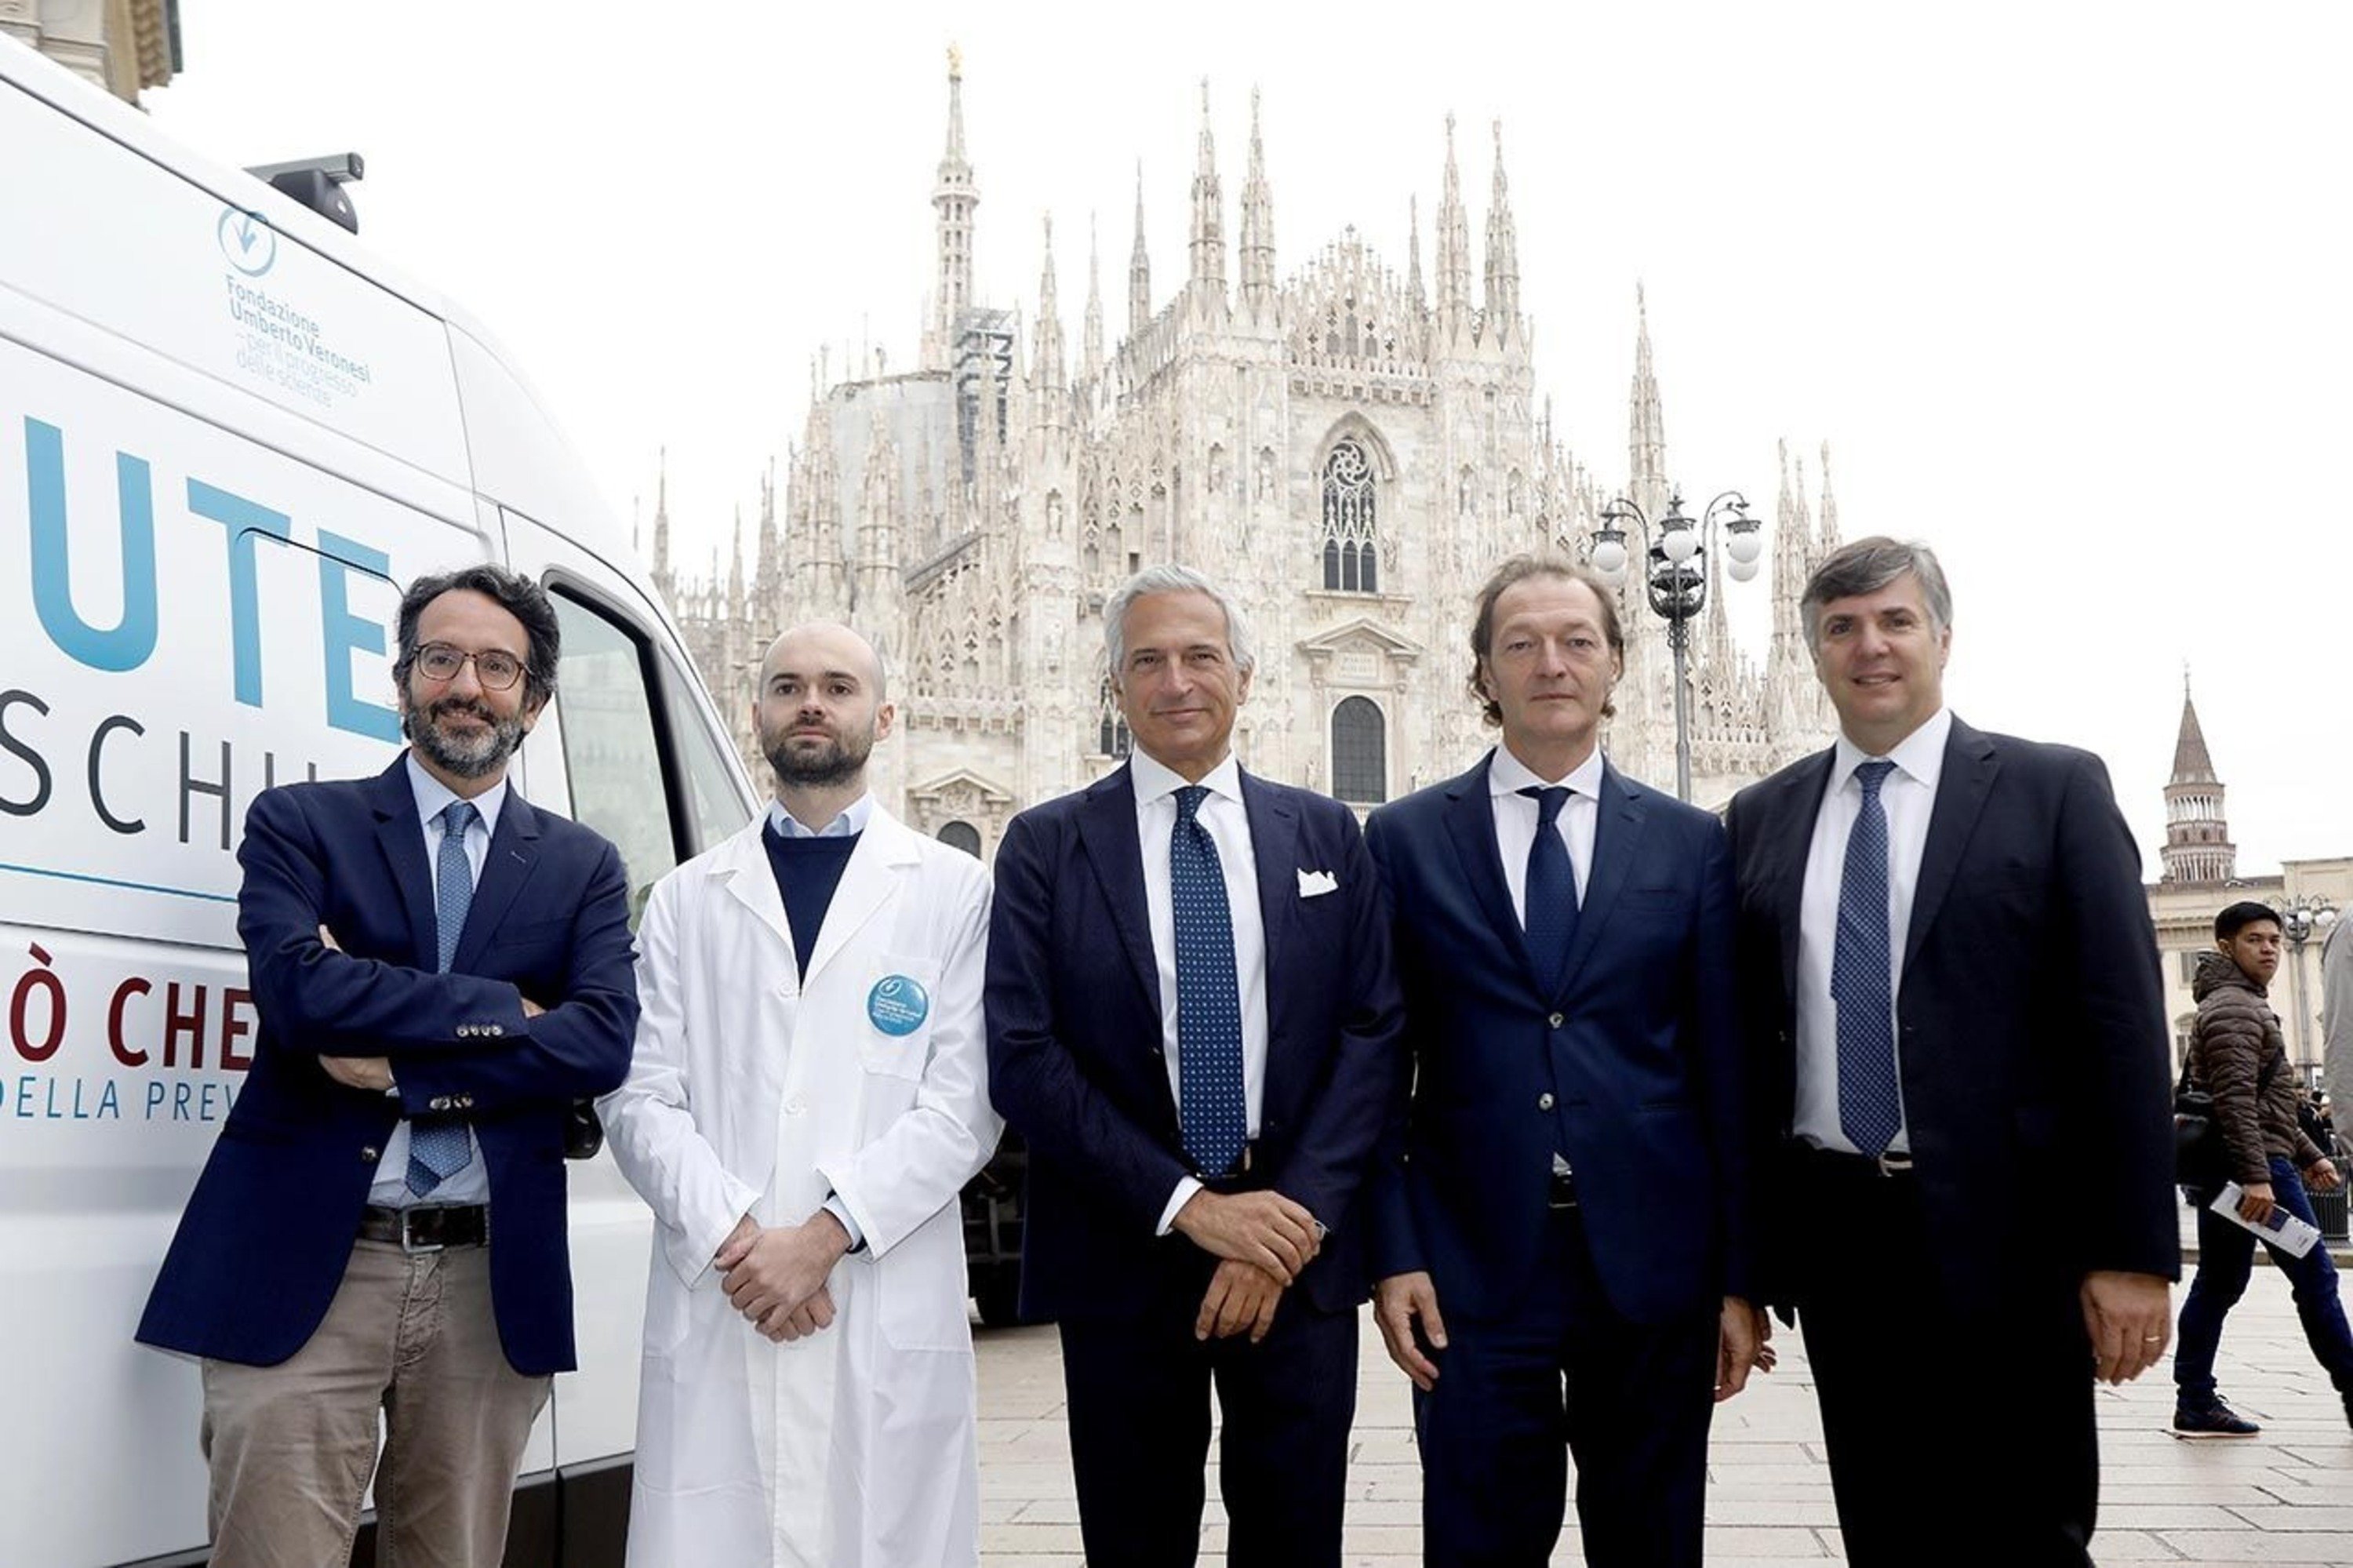 Fiat supporta il tour 2019 dedicato alla Salute Maschile: non solo prostata [intervista]